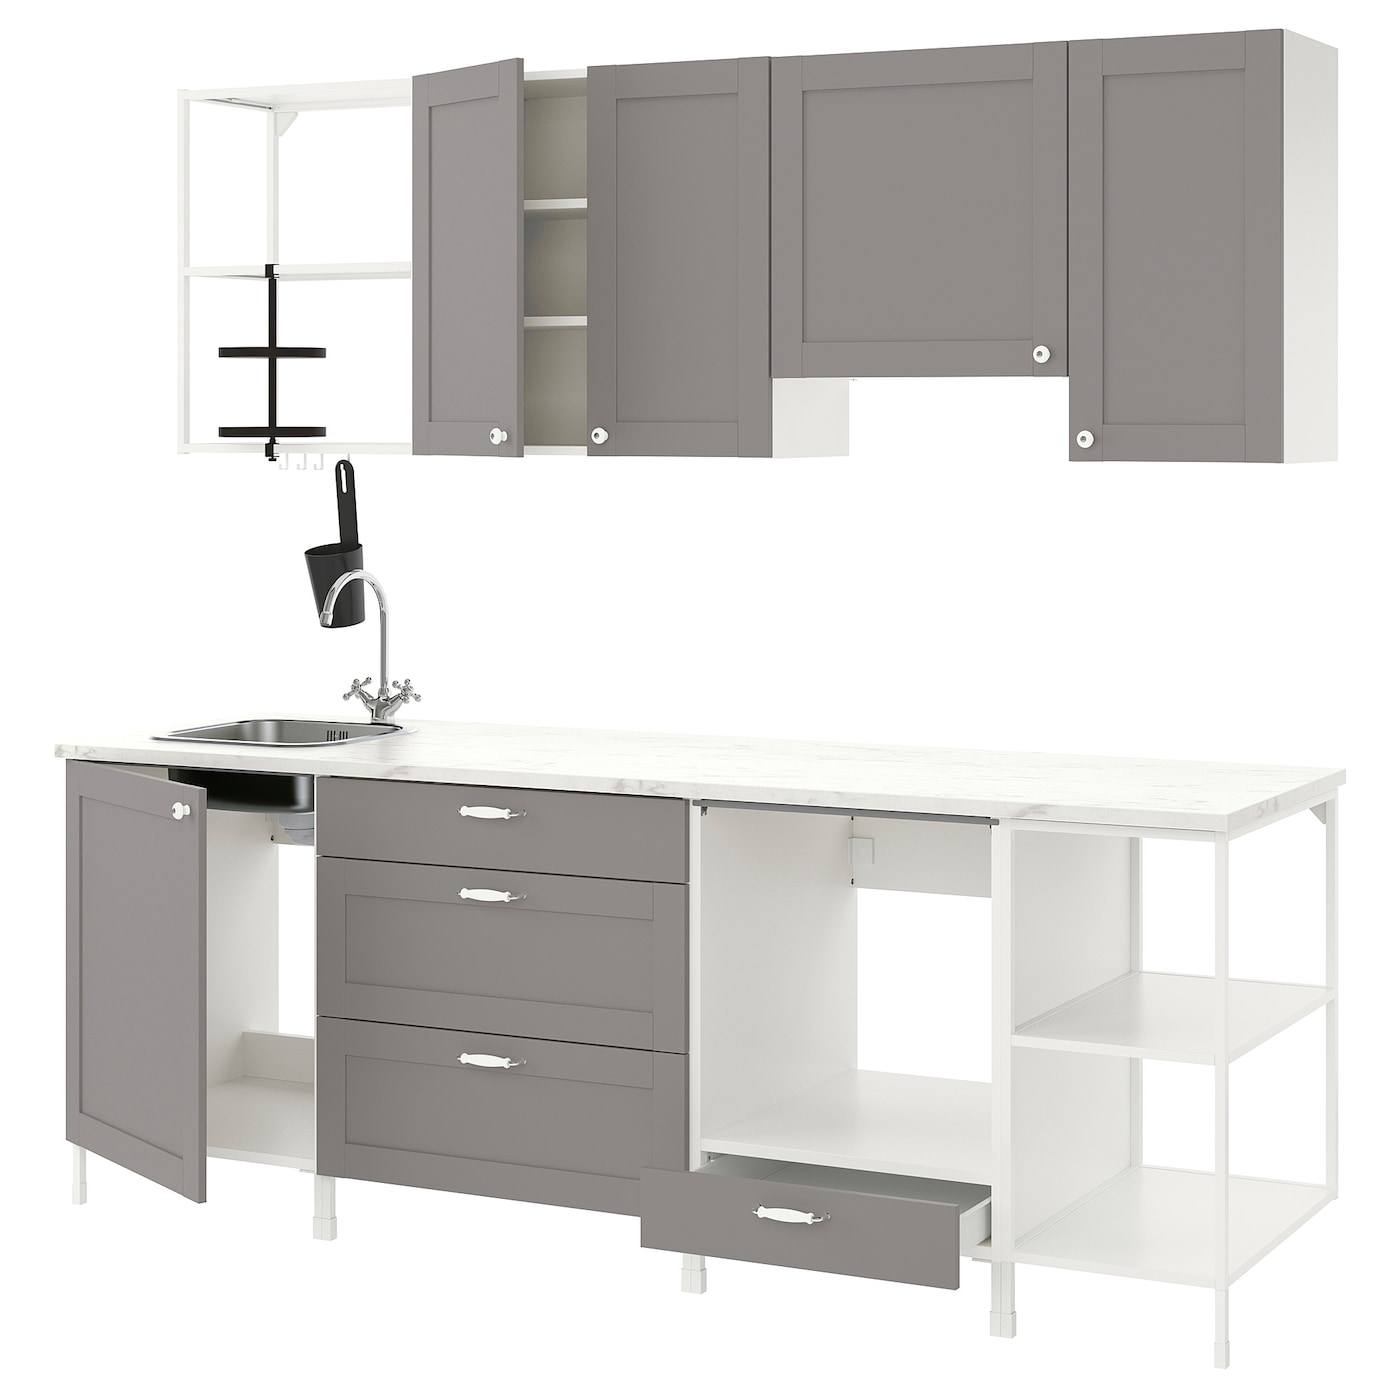 Кухня - ENHET  IKEA/ ЭНХЕТ ИКЕА, 243х222 см, белый/серый